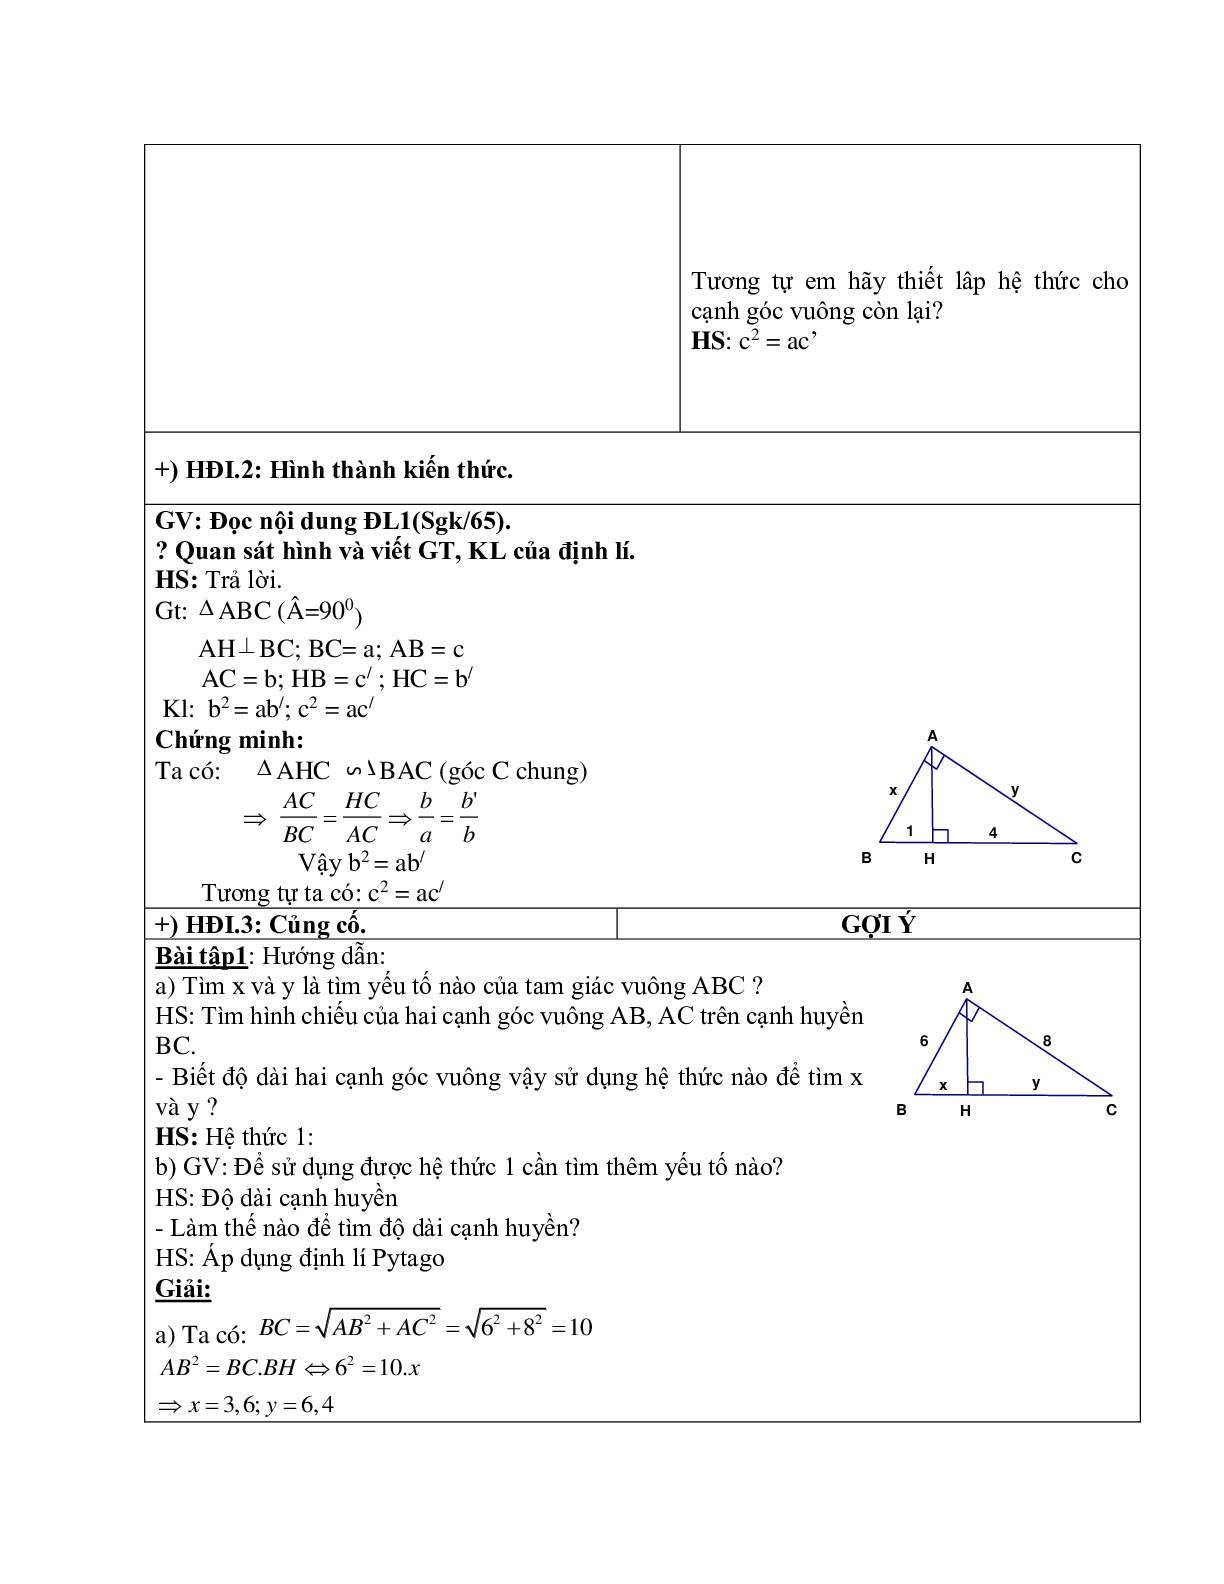 Giáo án Hình học 9 chương 1 bài 1: Hệ thức giữa cạnh và đường cao trong tam giác vuông mới nhất (trang 5)